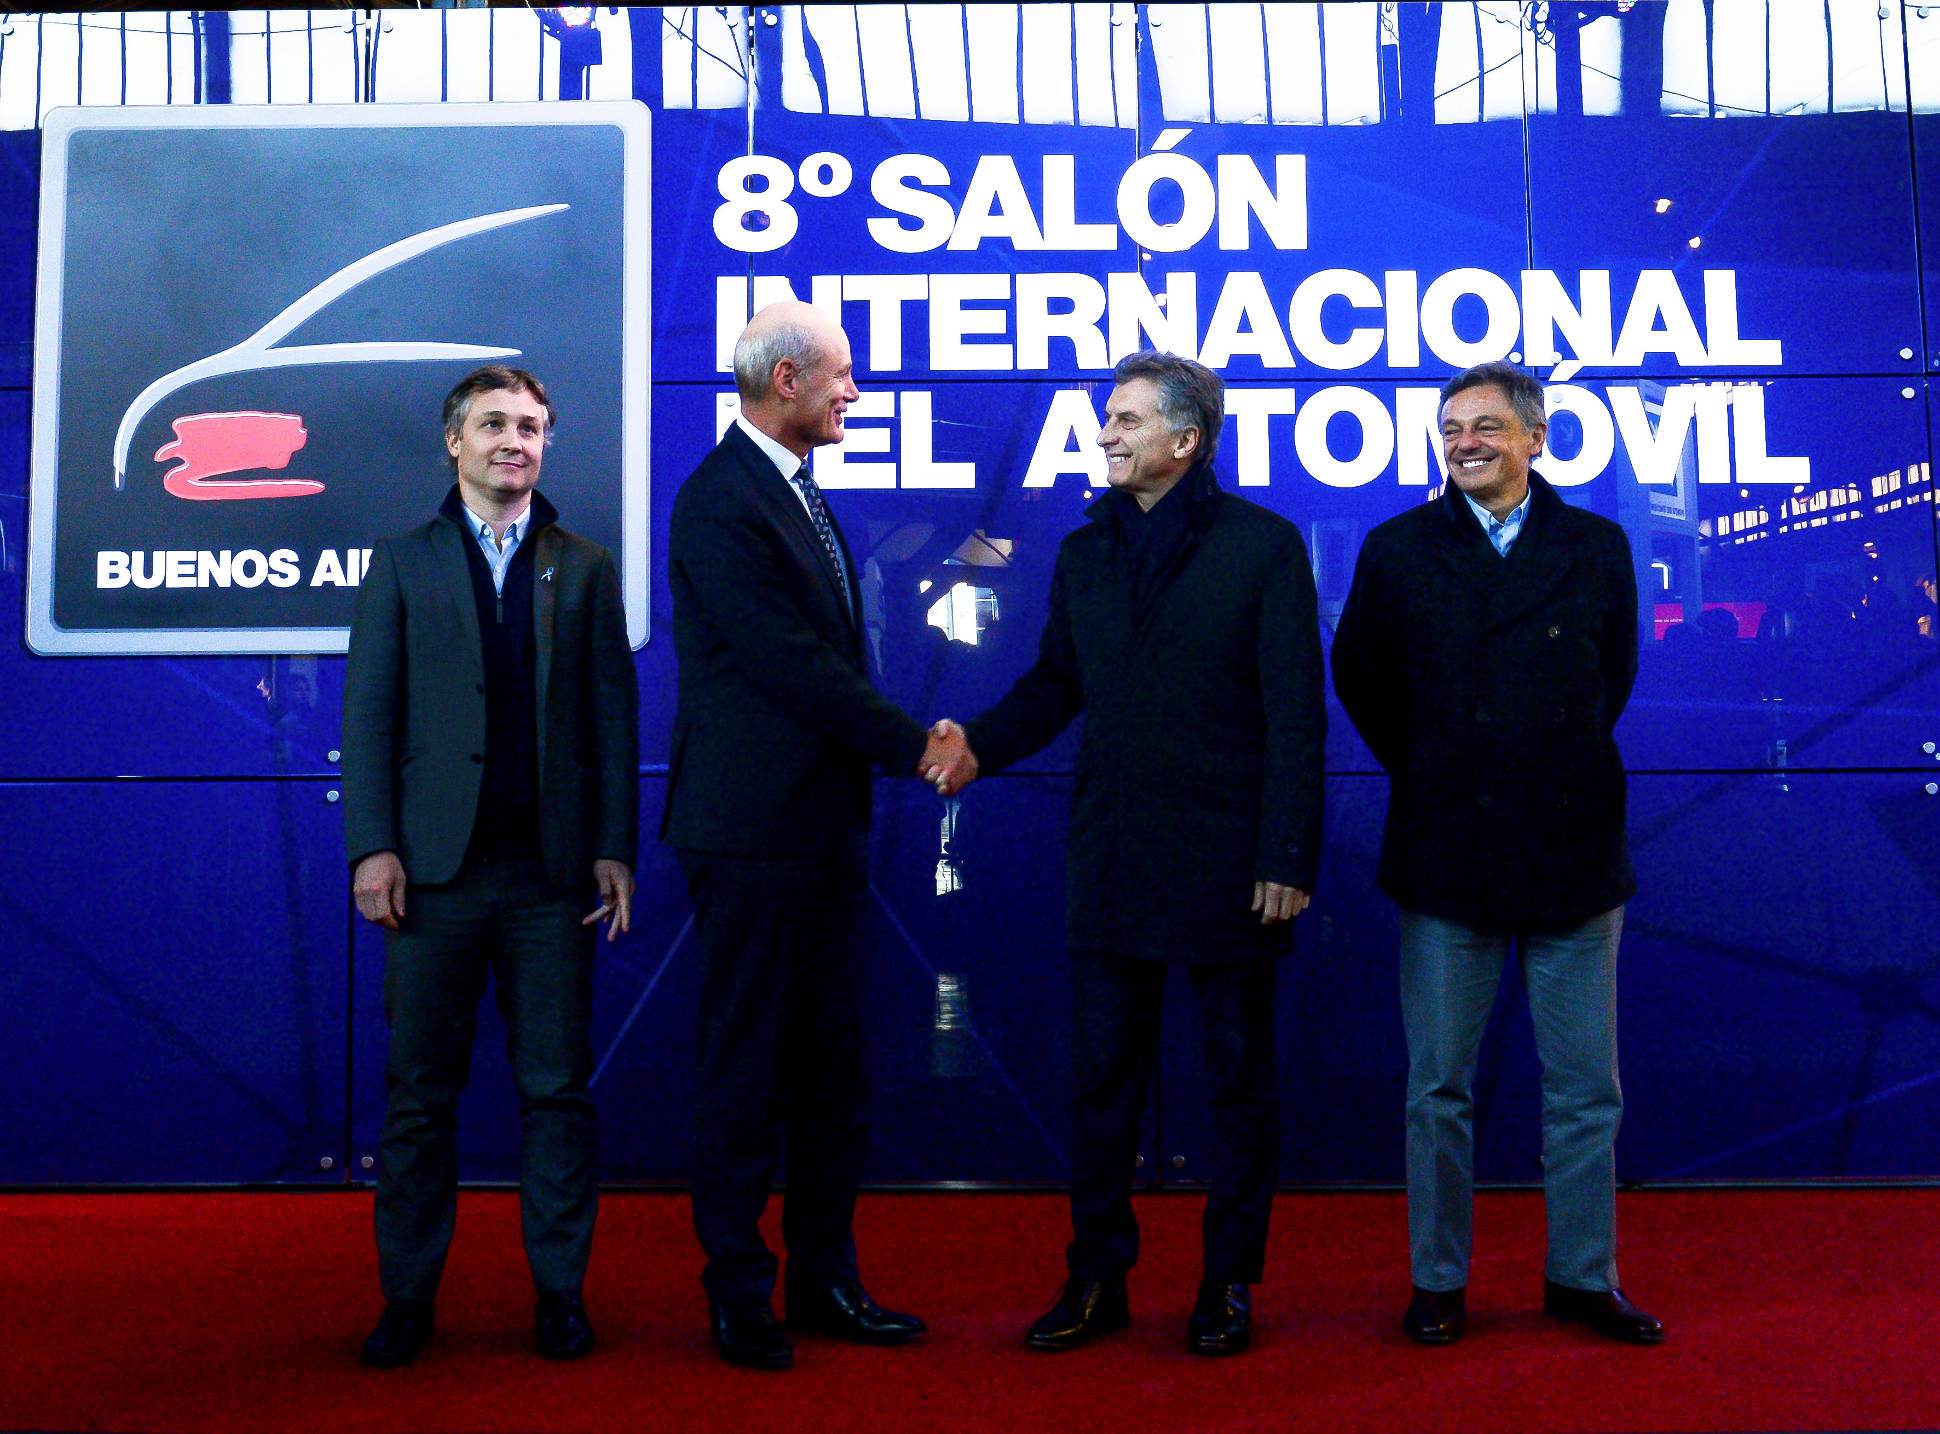 El presidente Macri visitó el Salón Internacional del Automóvil